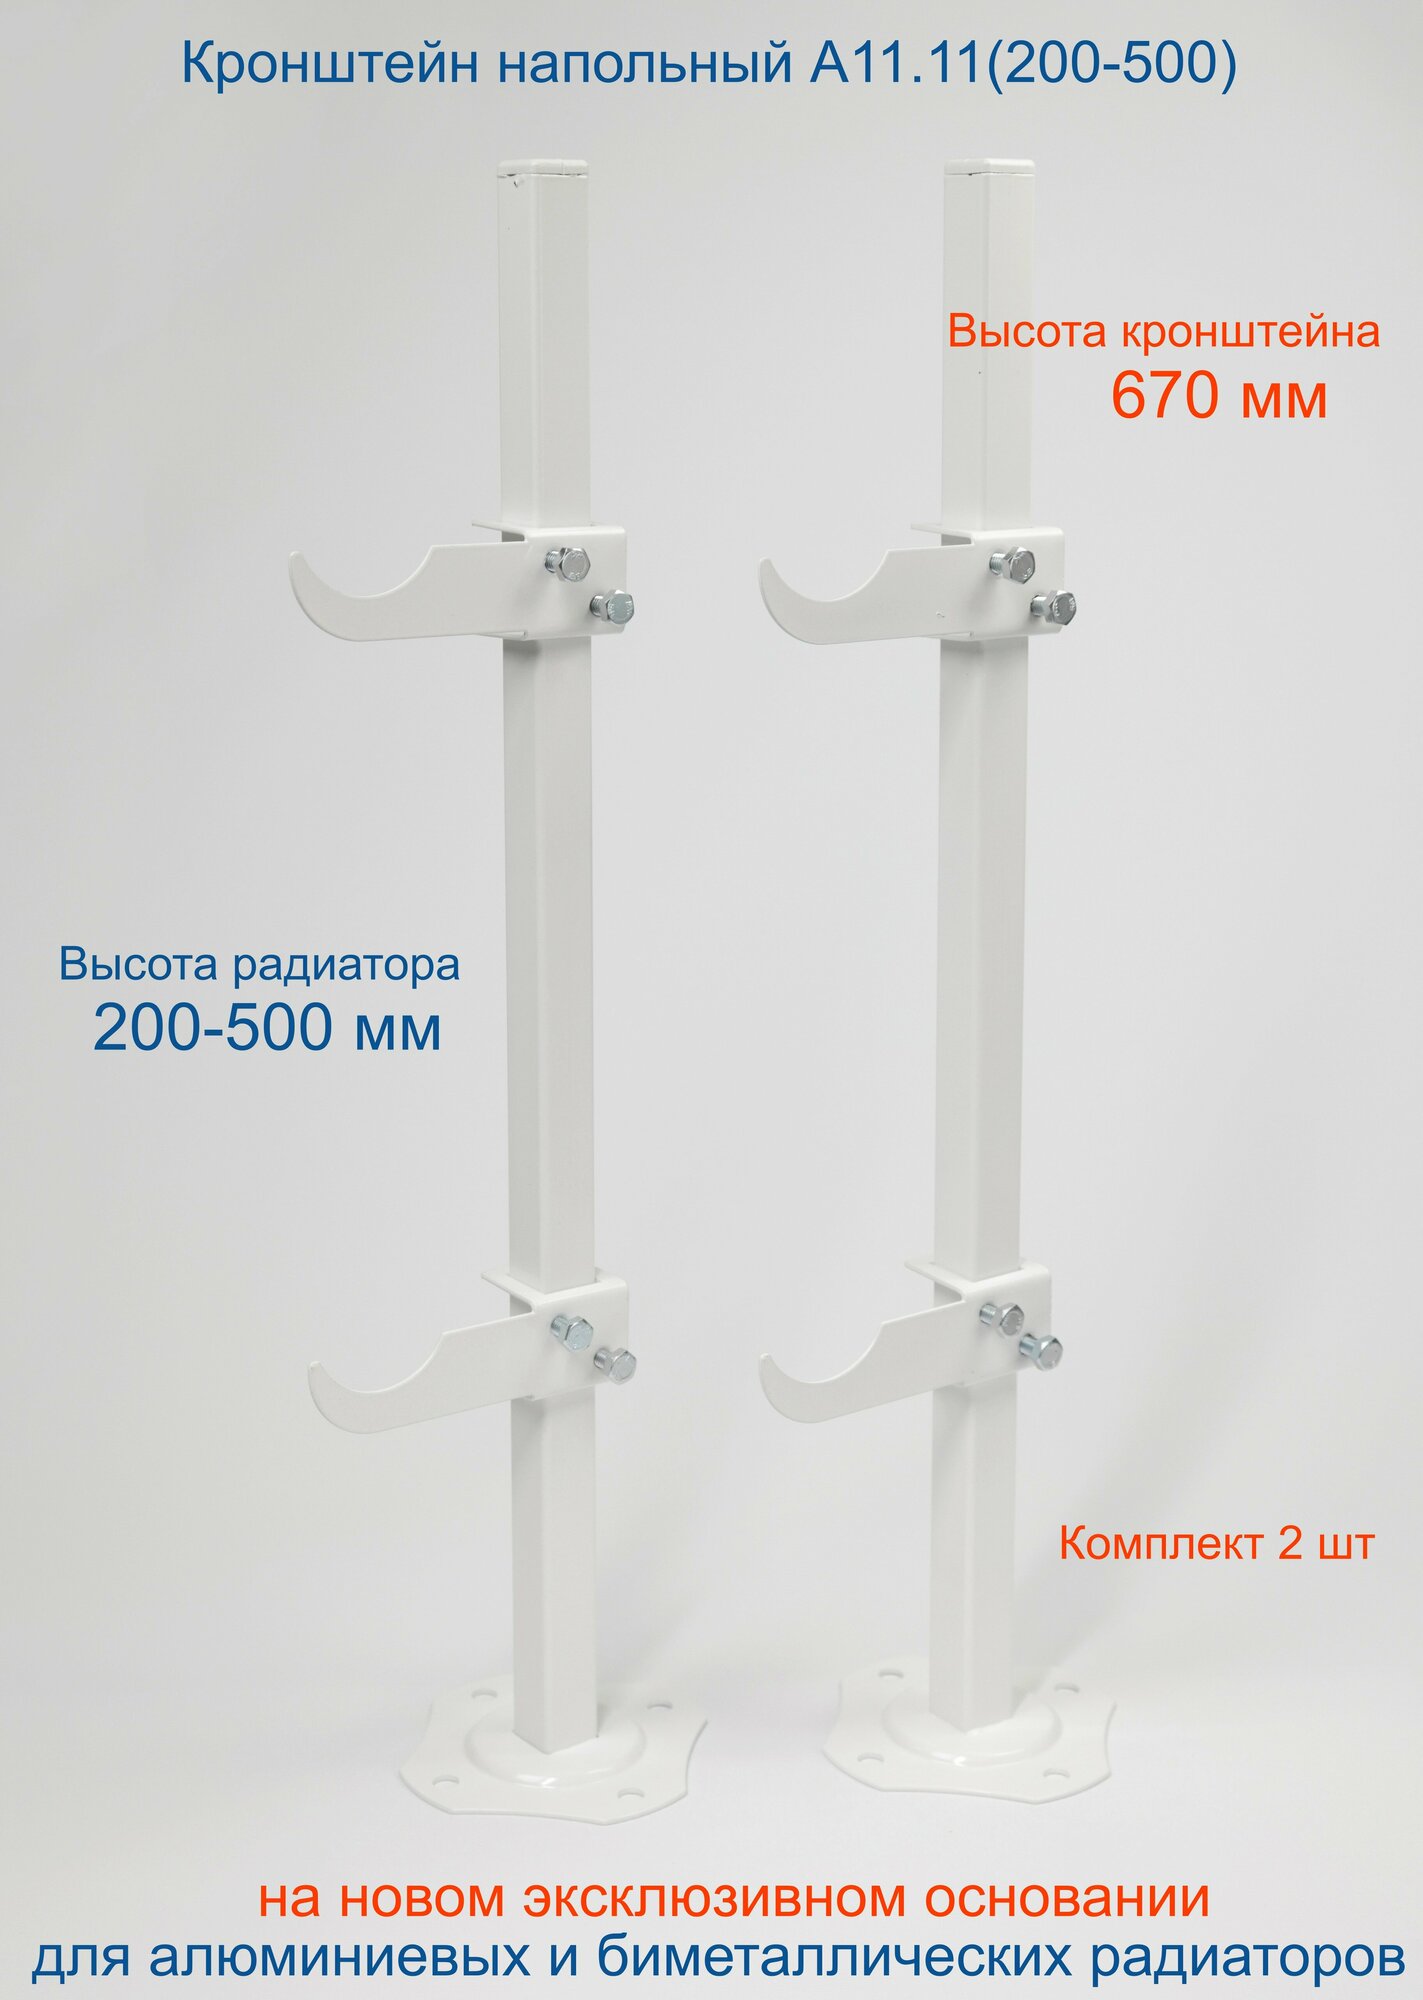 Кронштейн напольный регулируемый Кайрос А11.11 для алюминиевых и биметаллических радиаторов высотой 200-500 мм (высота стойки 670 мм) Комплект 2 шт.